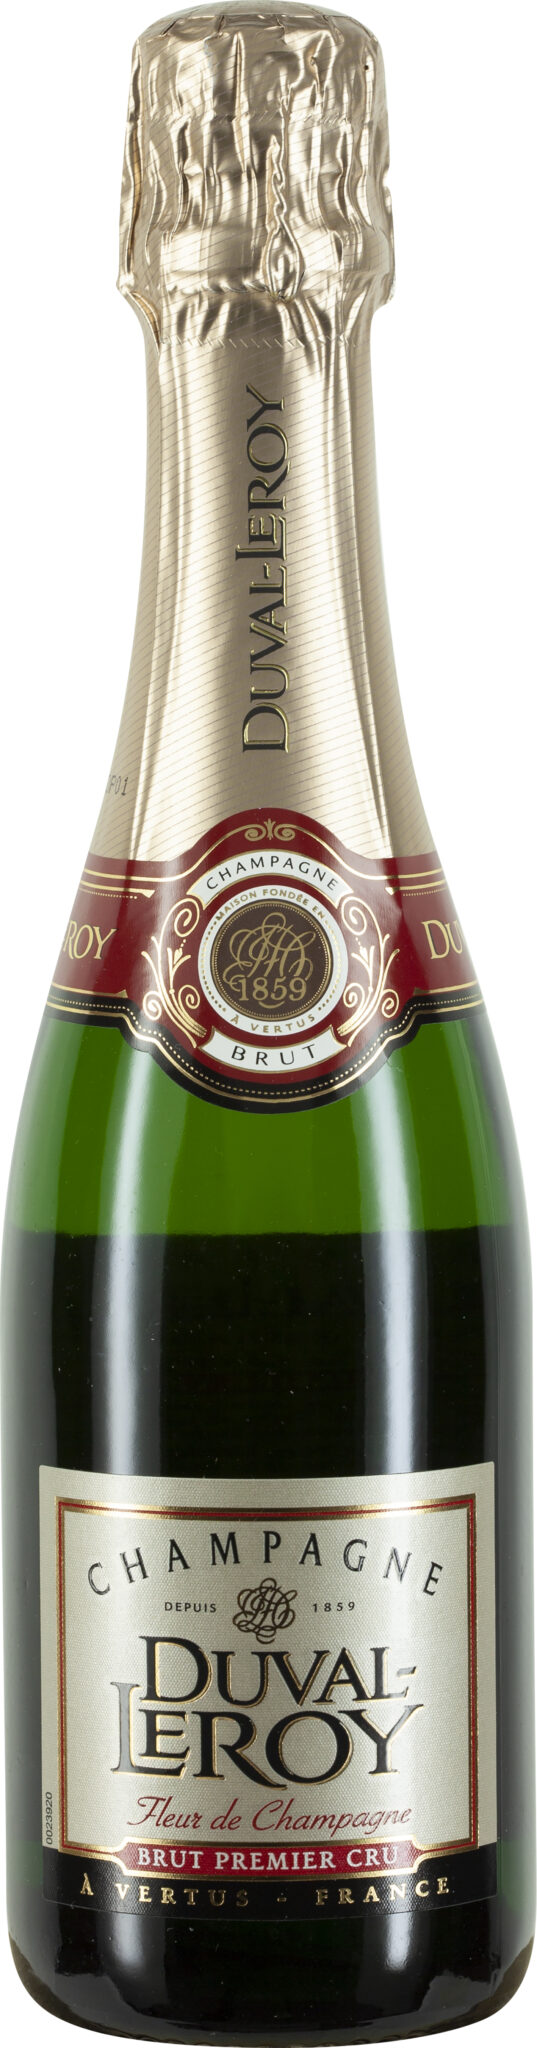 Duval-Leroy Fleur de Champagne, Champagne Brut Premier Cru, 0,375 l